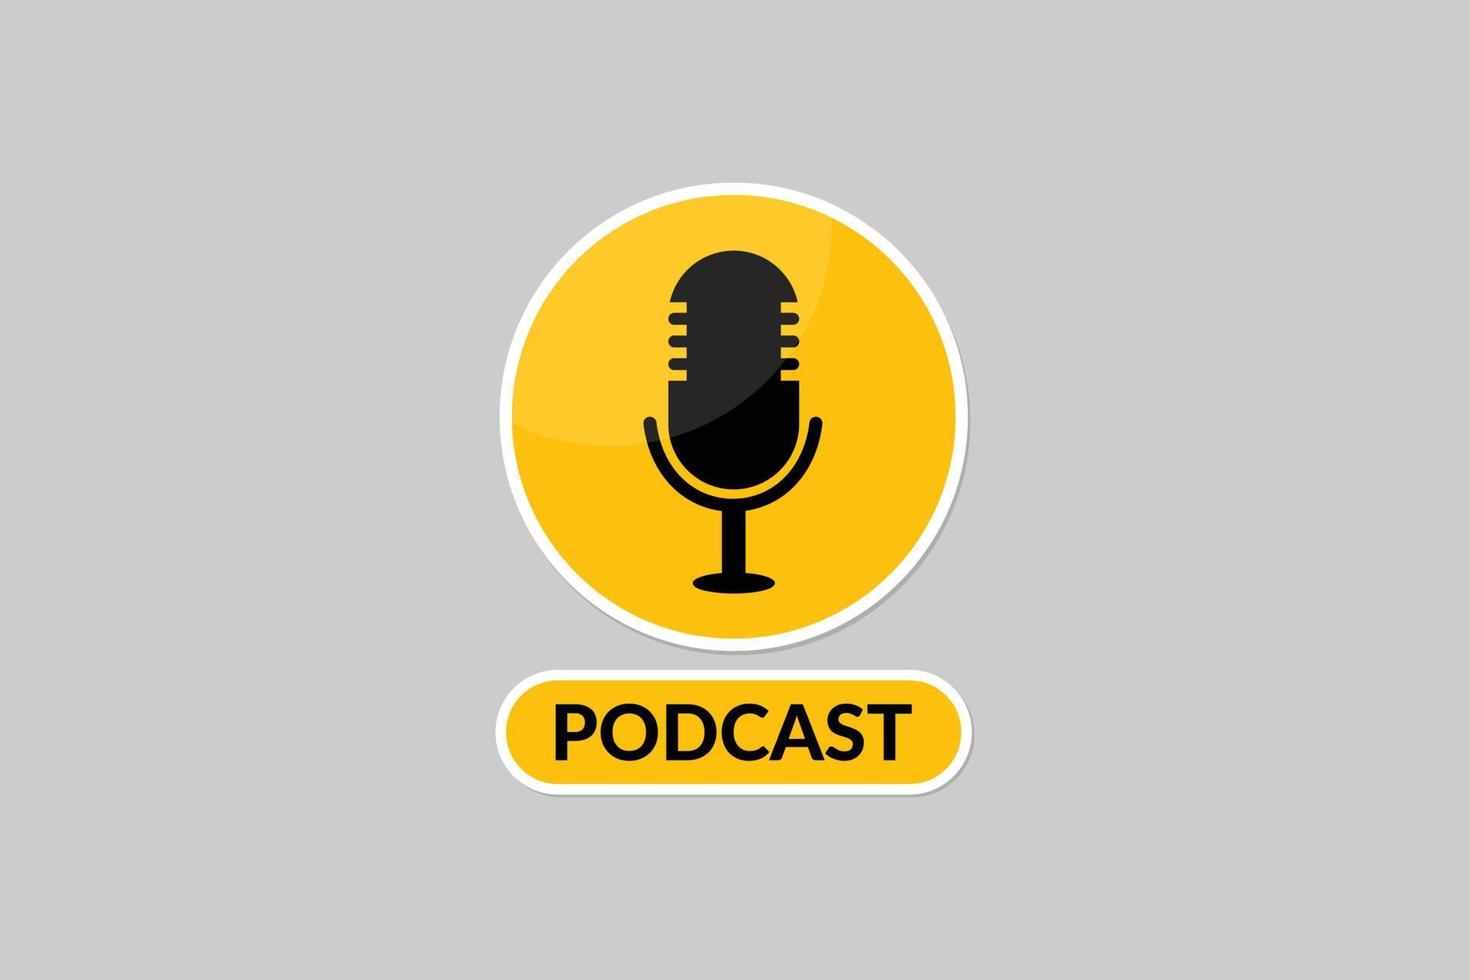 conception de vecteur de podcast avec illustration vectorielle d'icône de microphone.